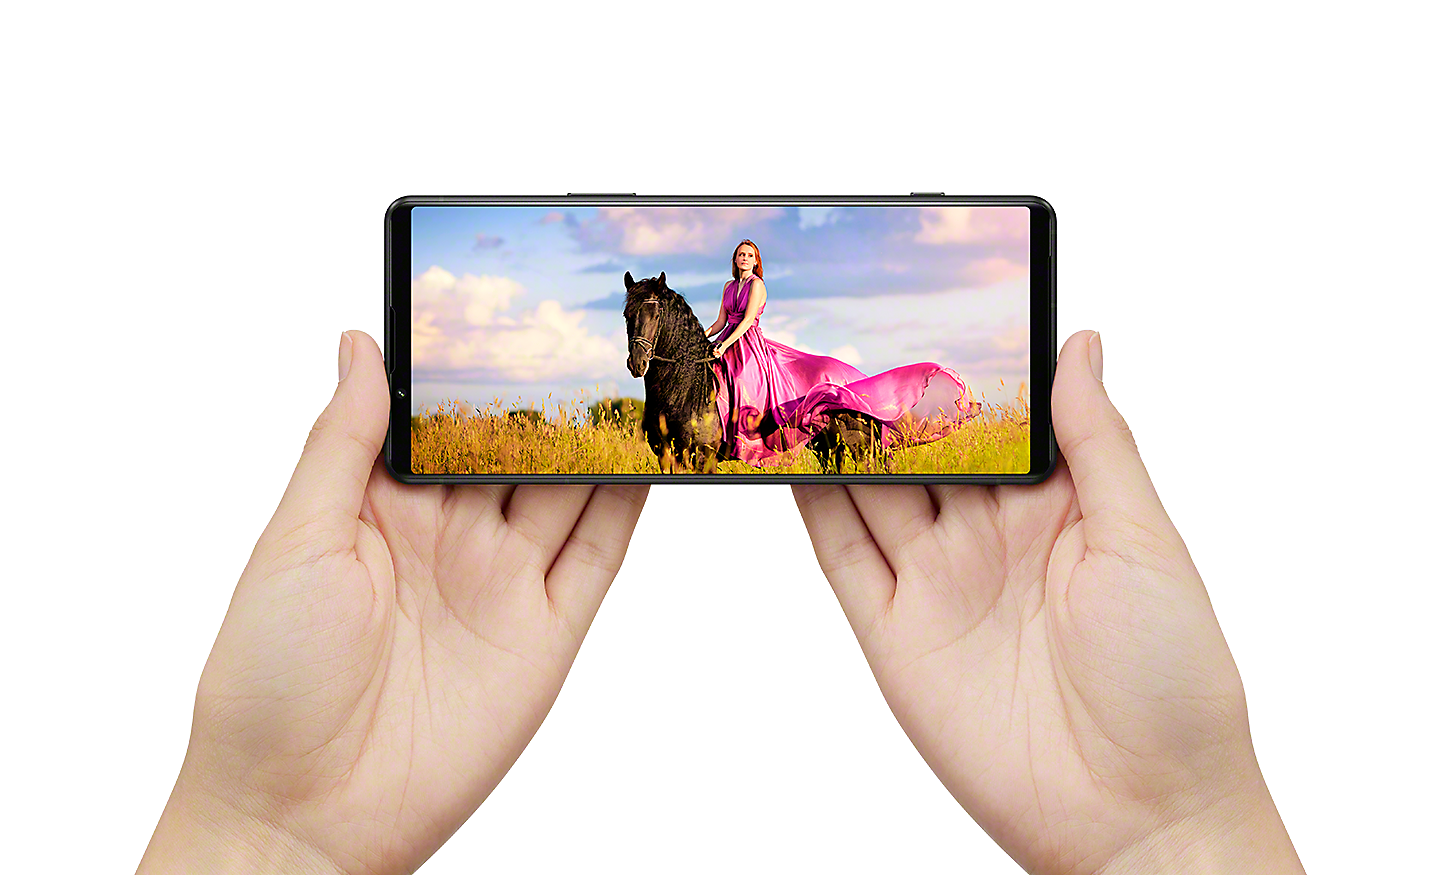 Roke držijo telefon Xperia 5 IV v ležečem položaju s prikazom kinematografske slike ženske na konju